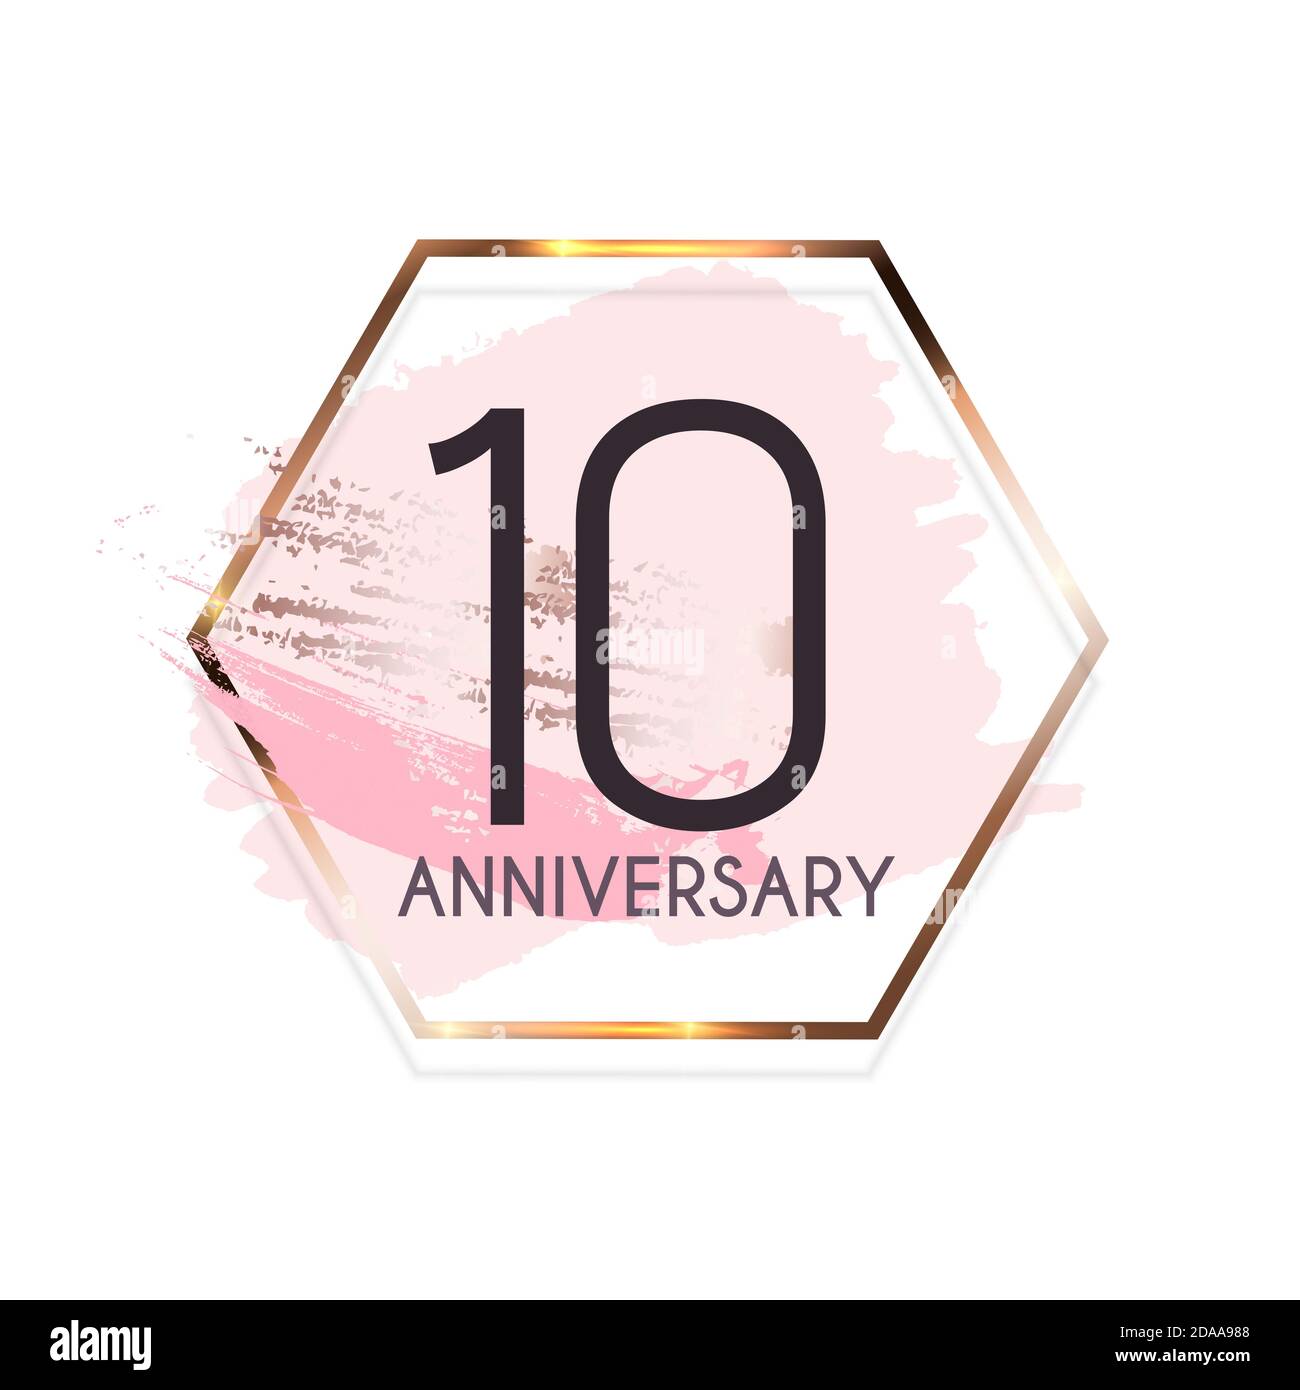 10th anniversary design